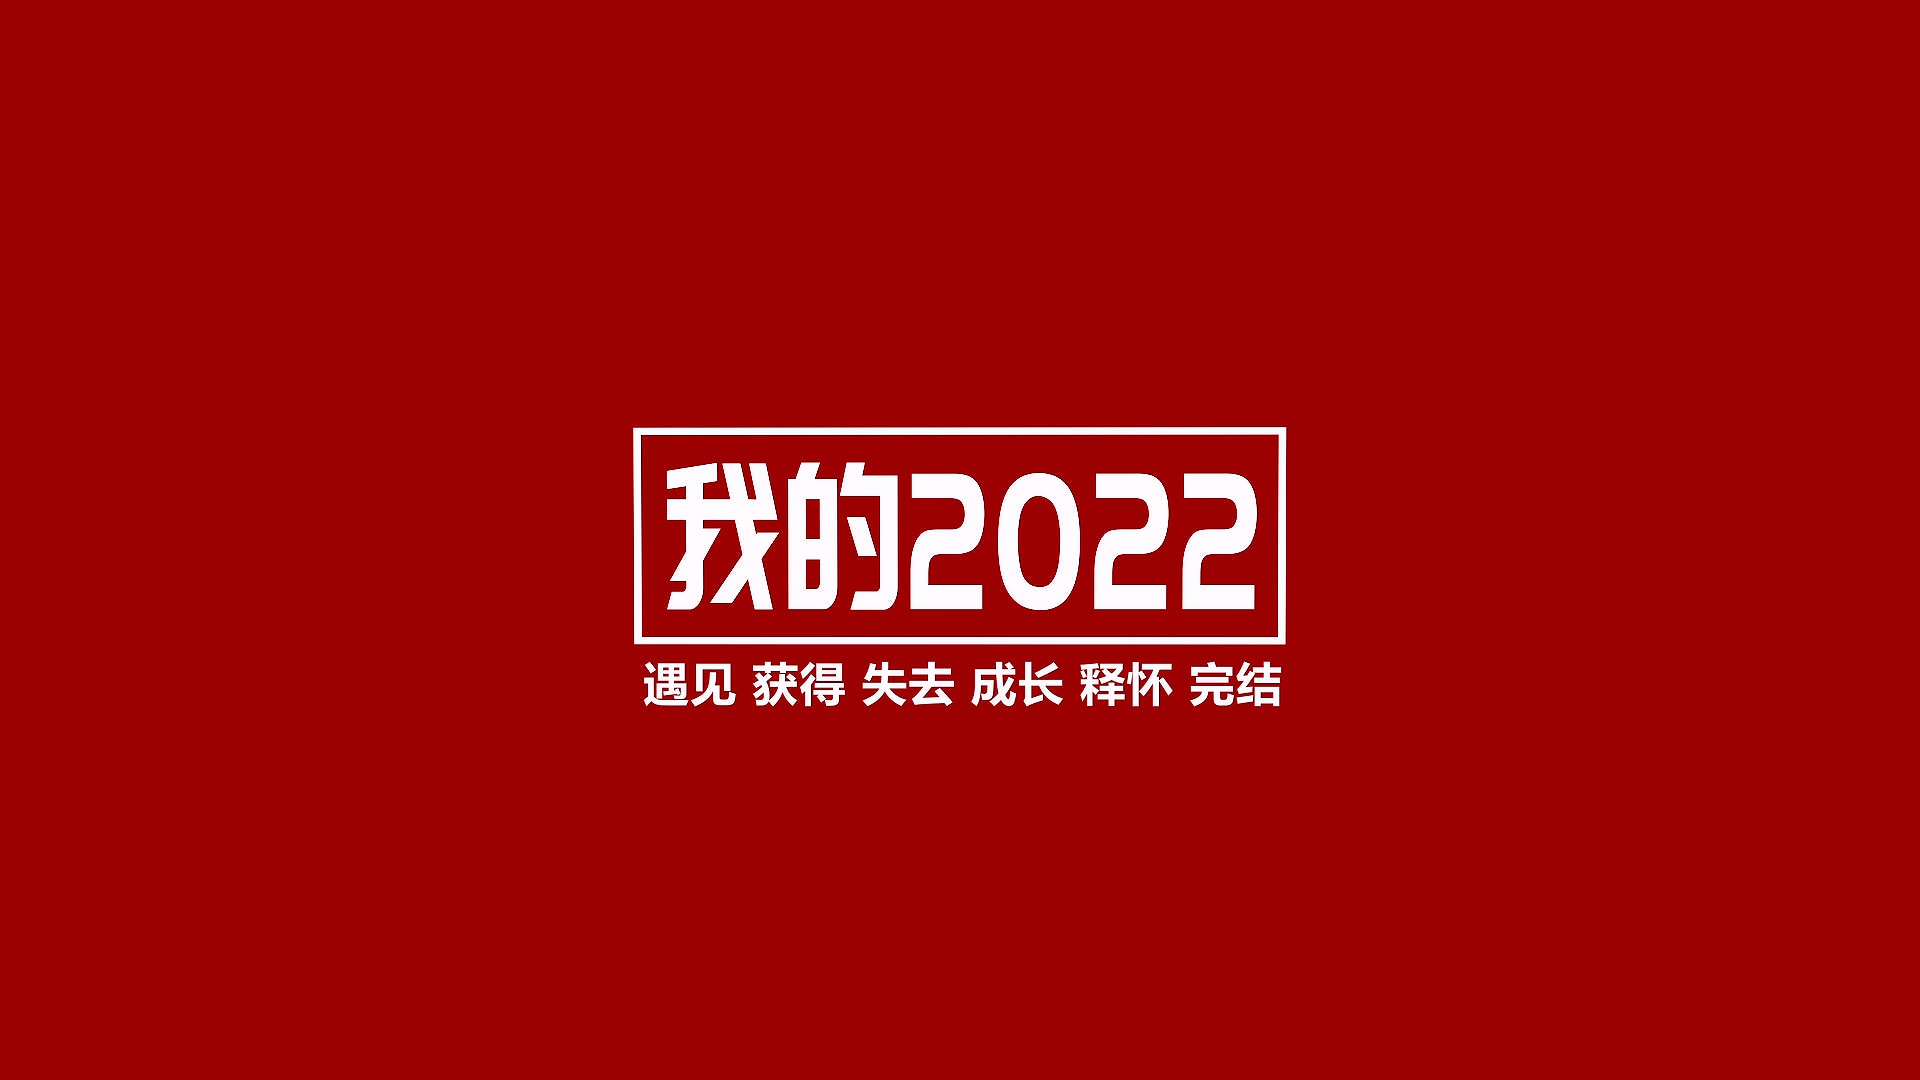 我院2022年终总结视频《我的2022》